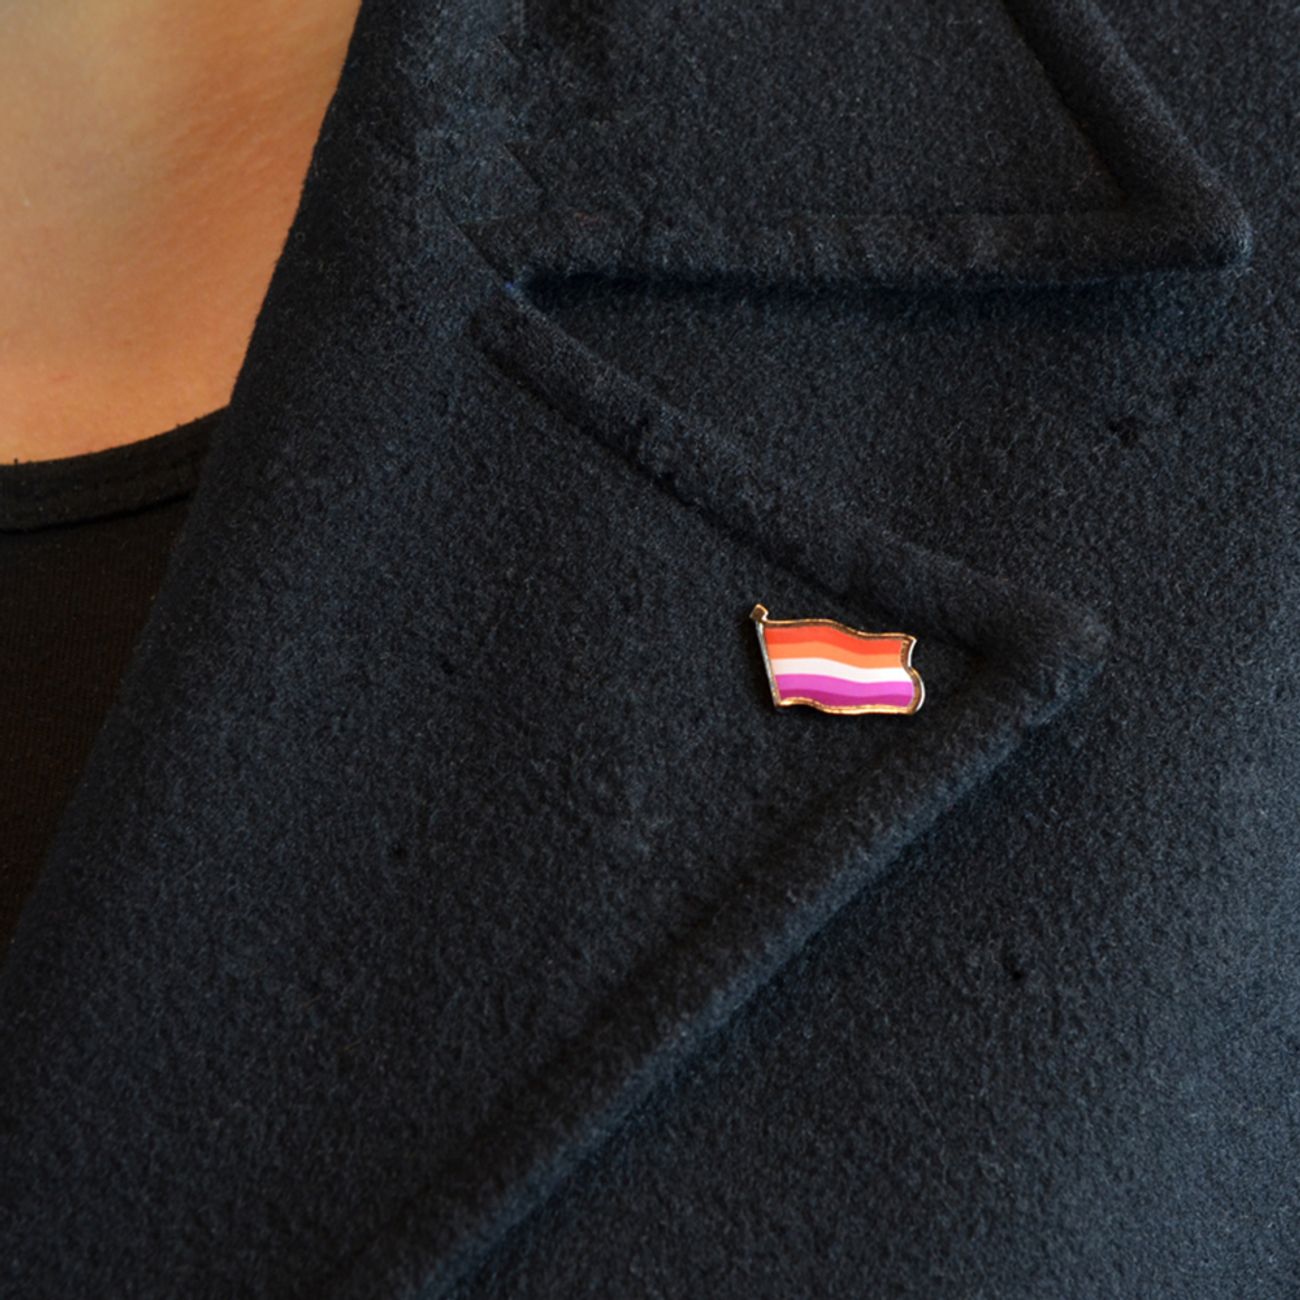 pinflagga-pride-lesbian-96111-3